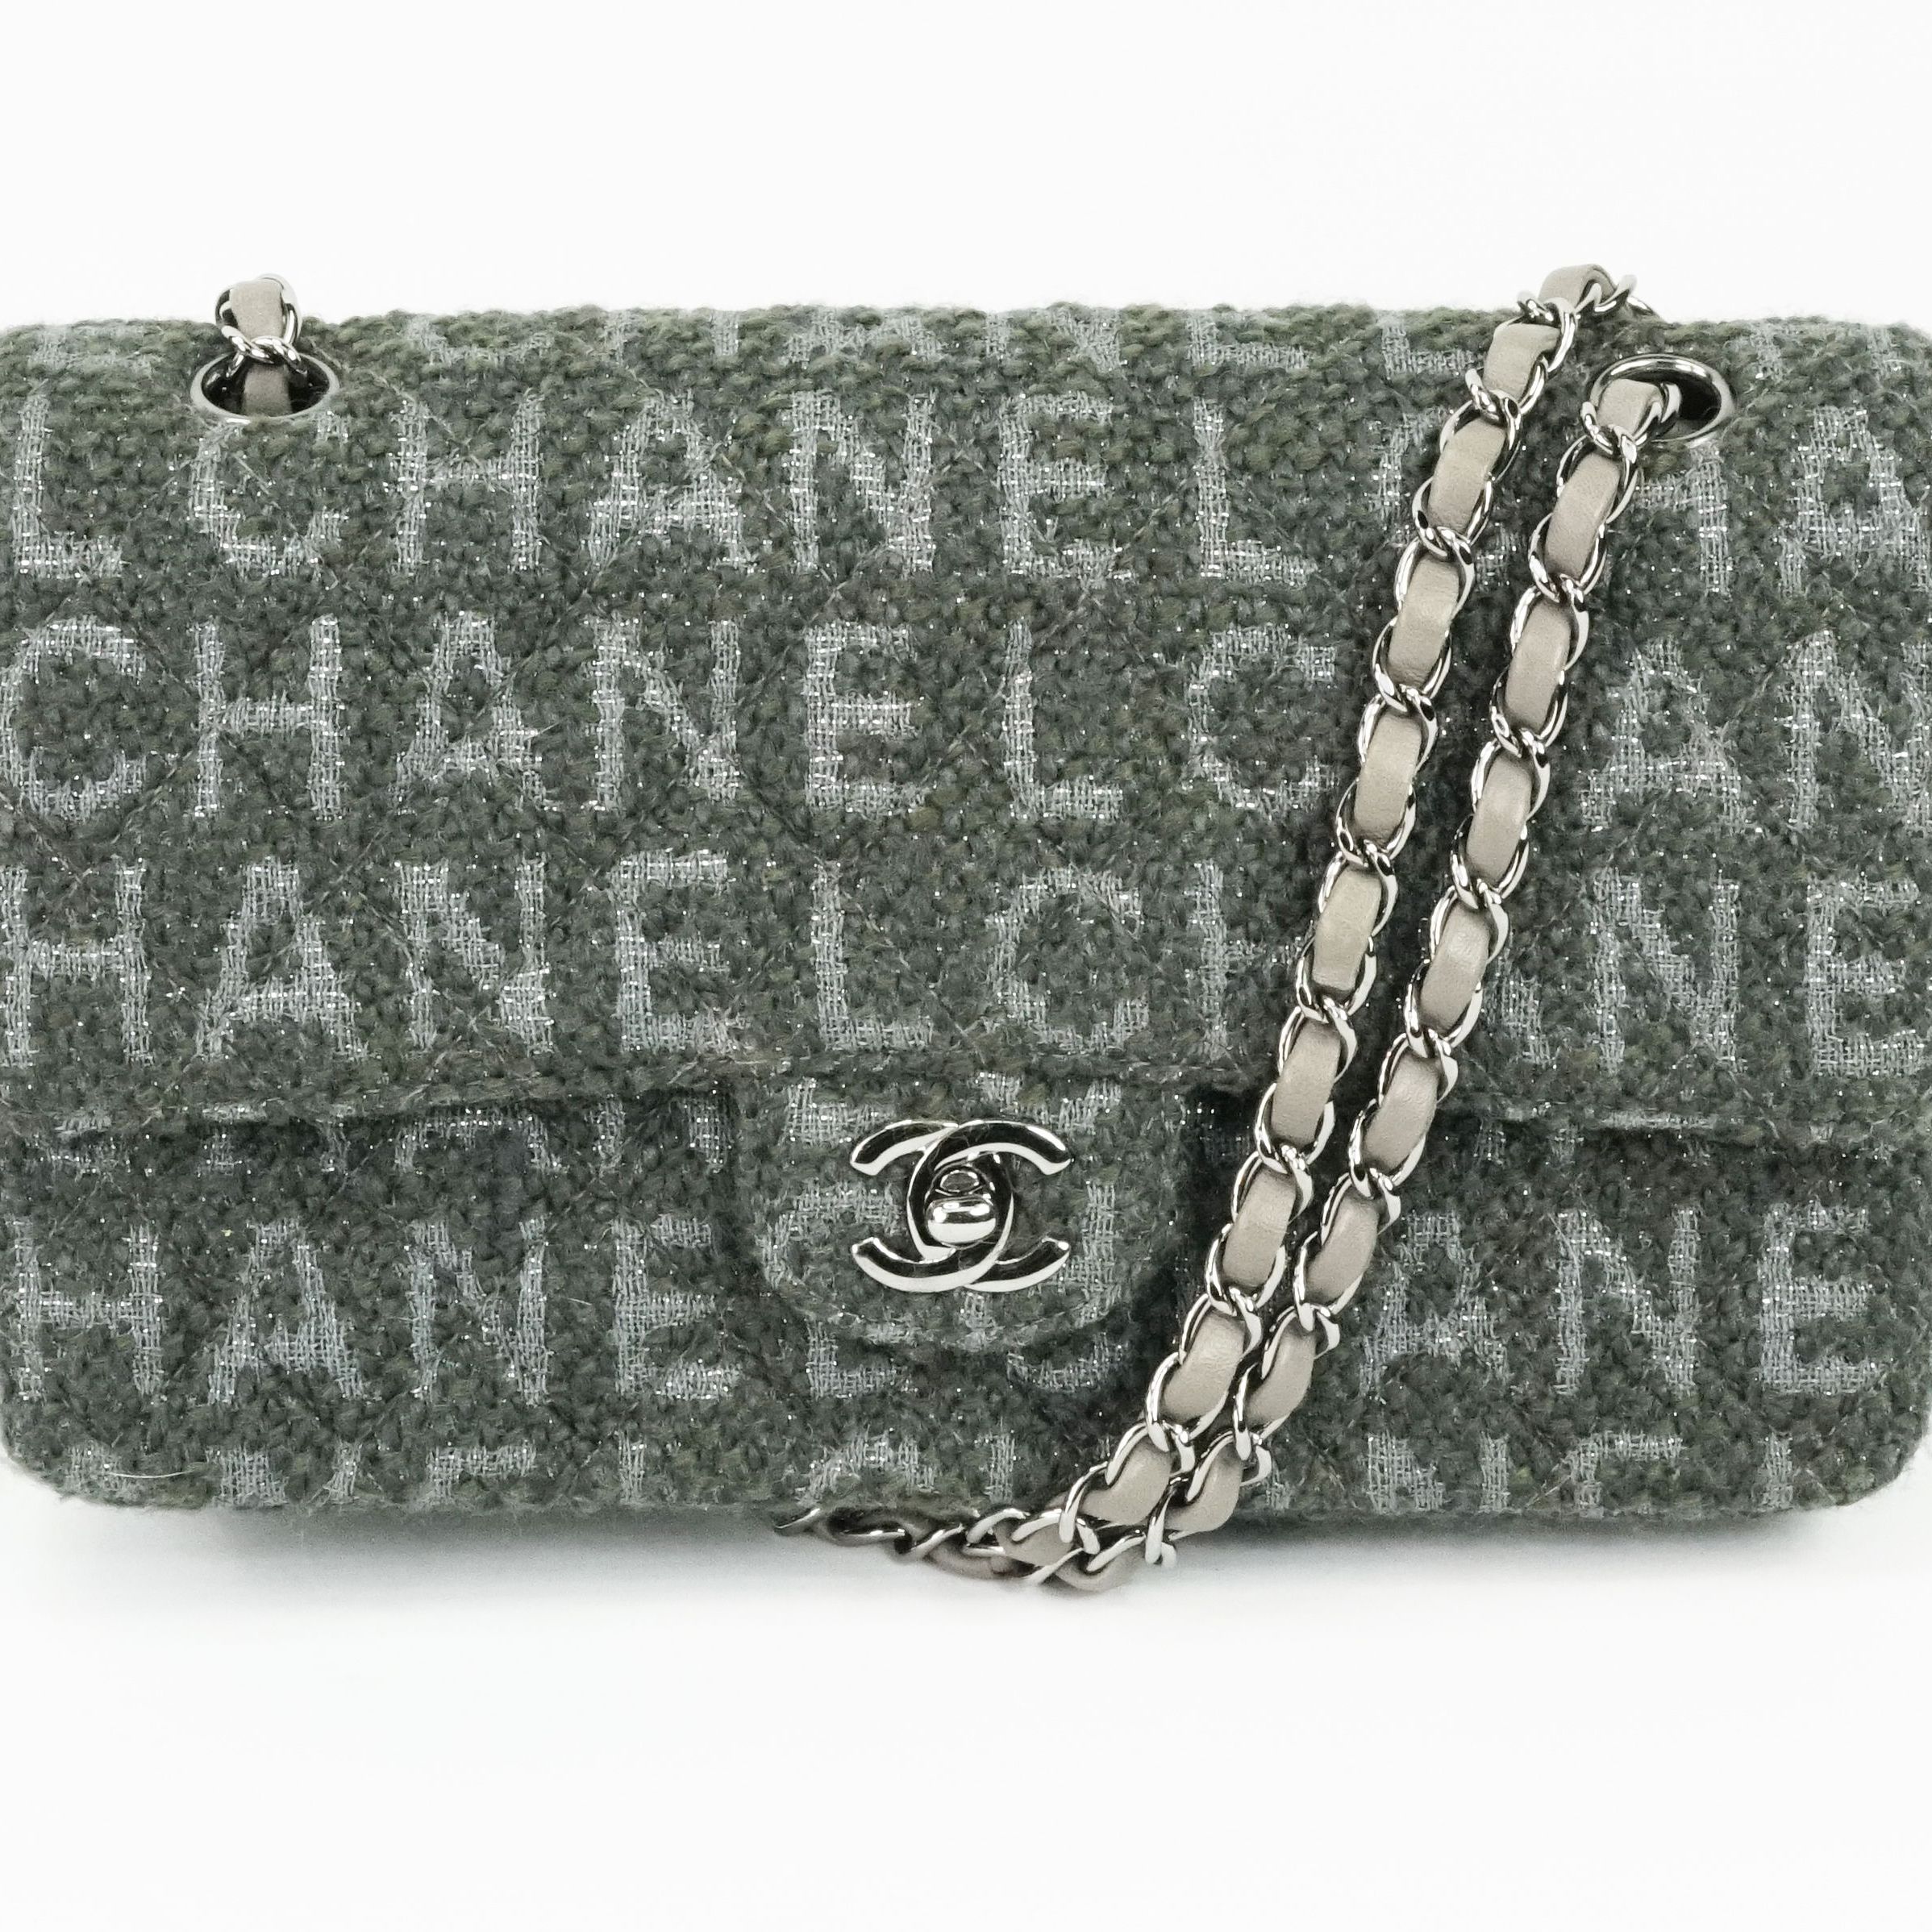 Timeless en tweed avec sigle "Chanel"